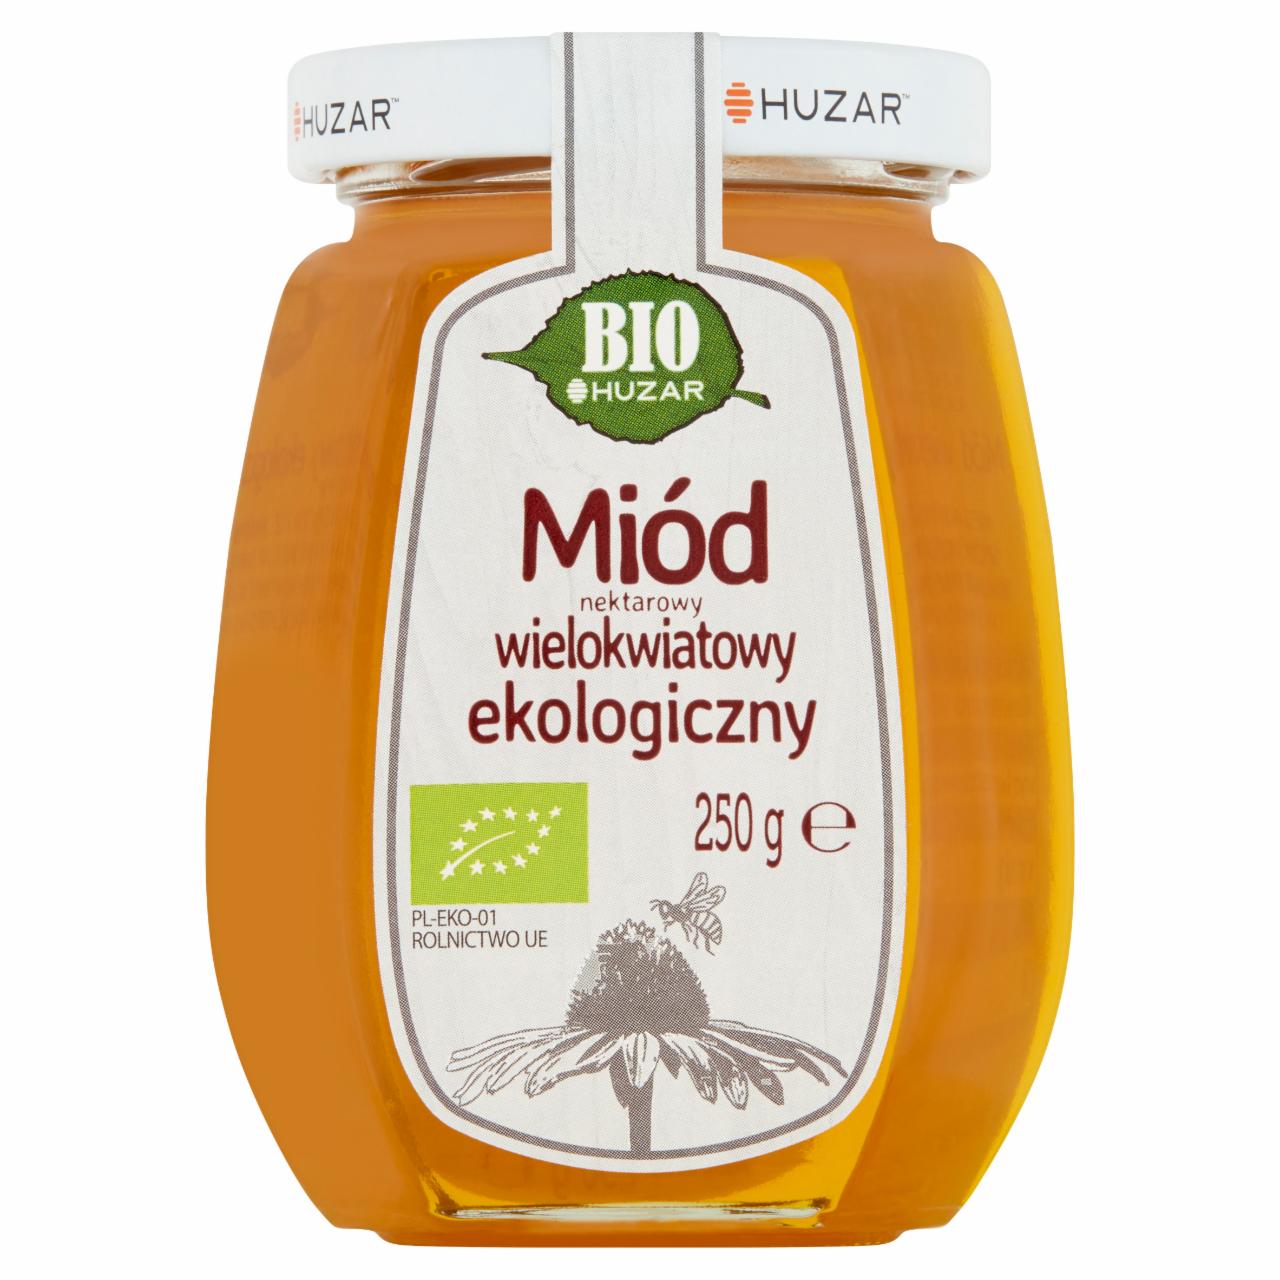 Zdjęcia - Huzar Bio Miód nektarowy wielokwiatowy ekologiczny 250 g